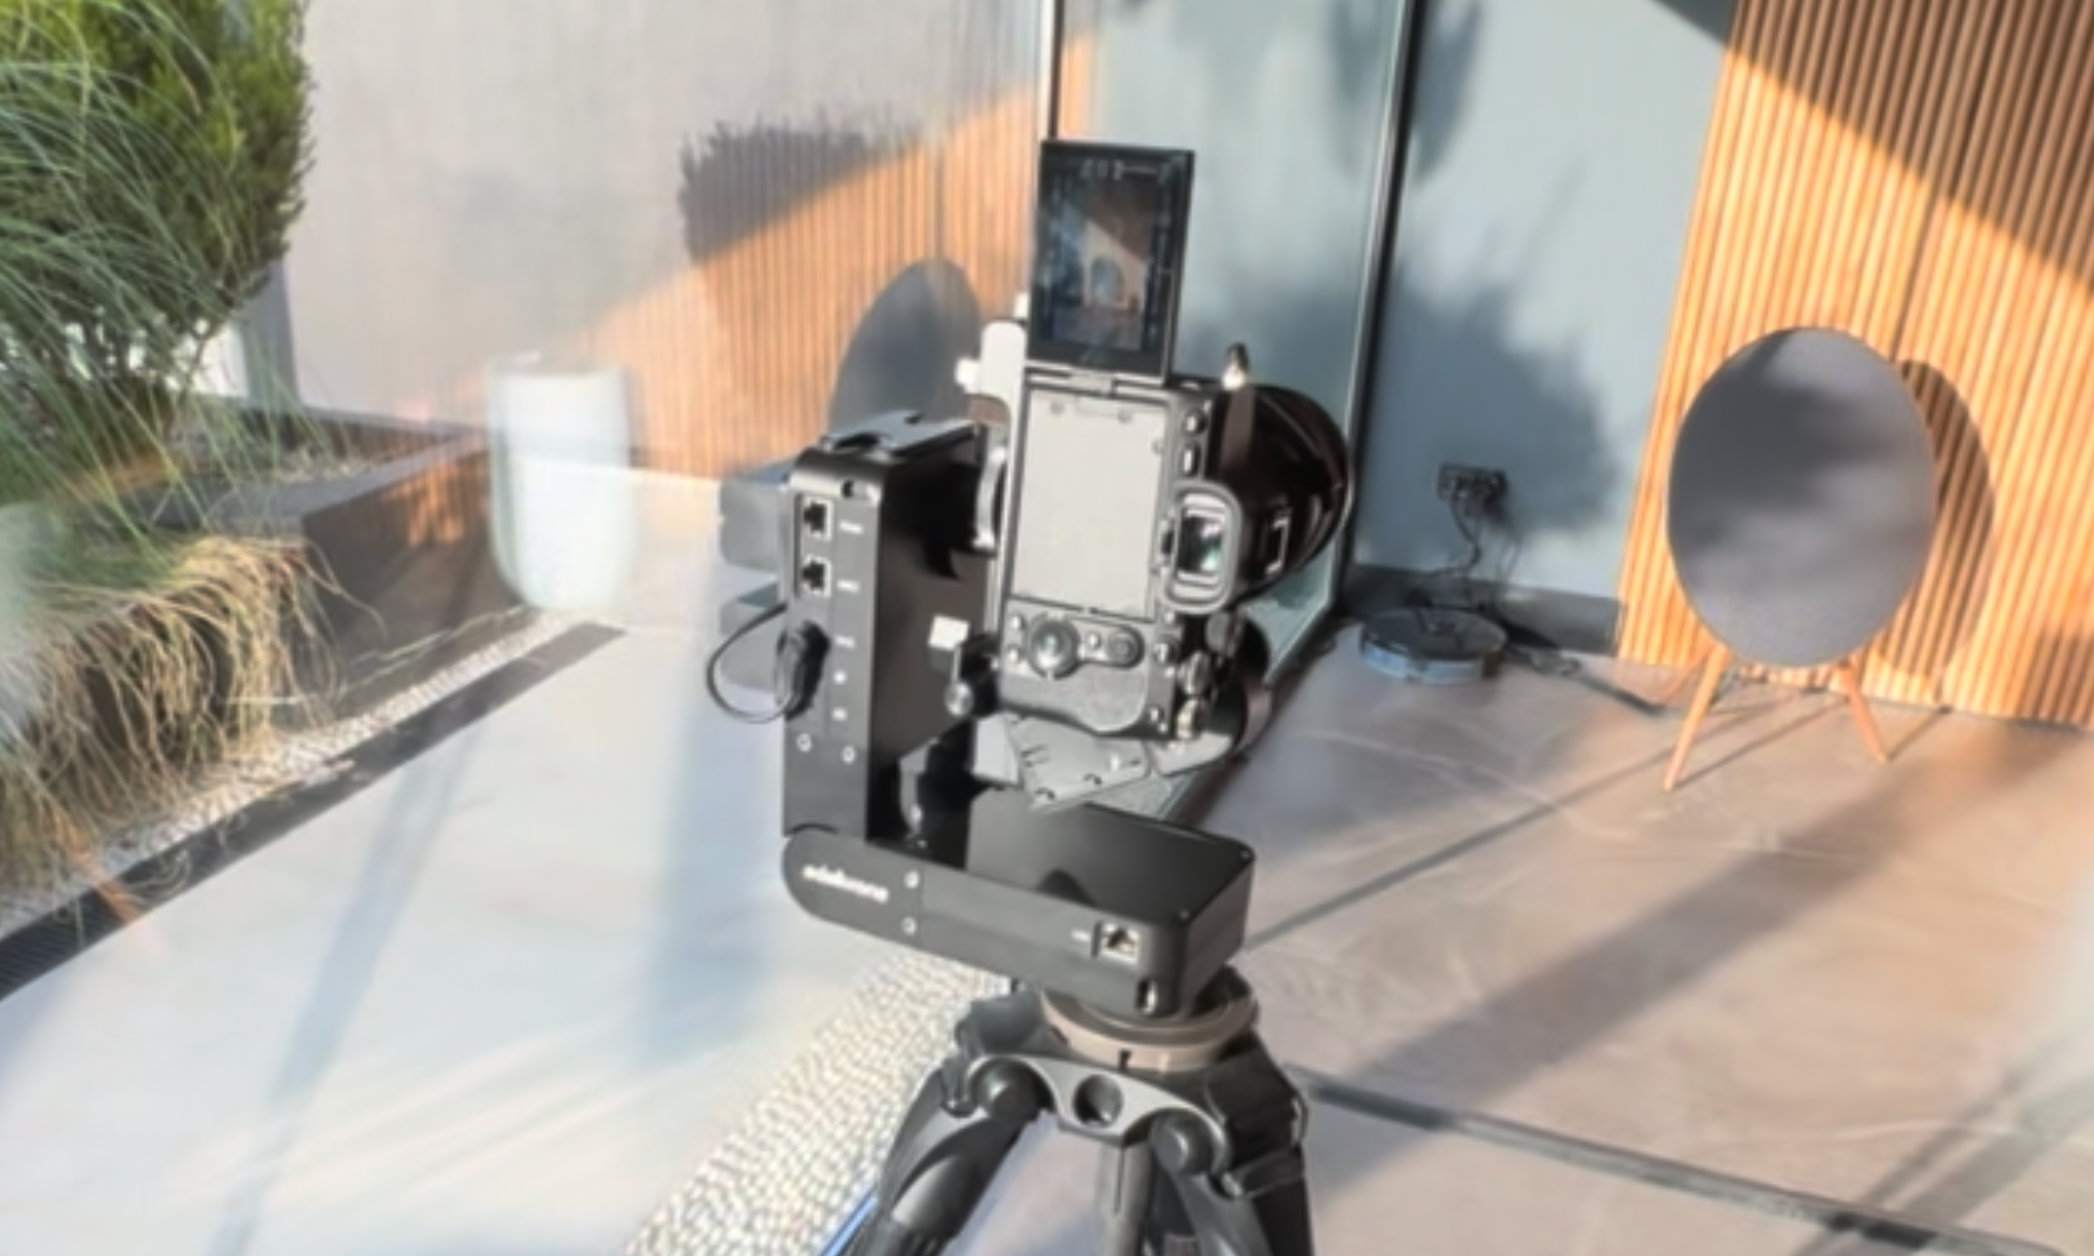 Shooting vertical videos with HeadPLUS